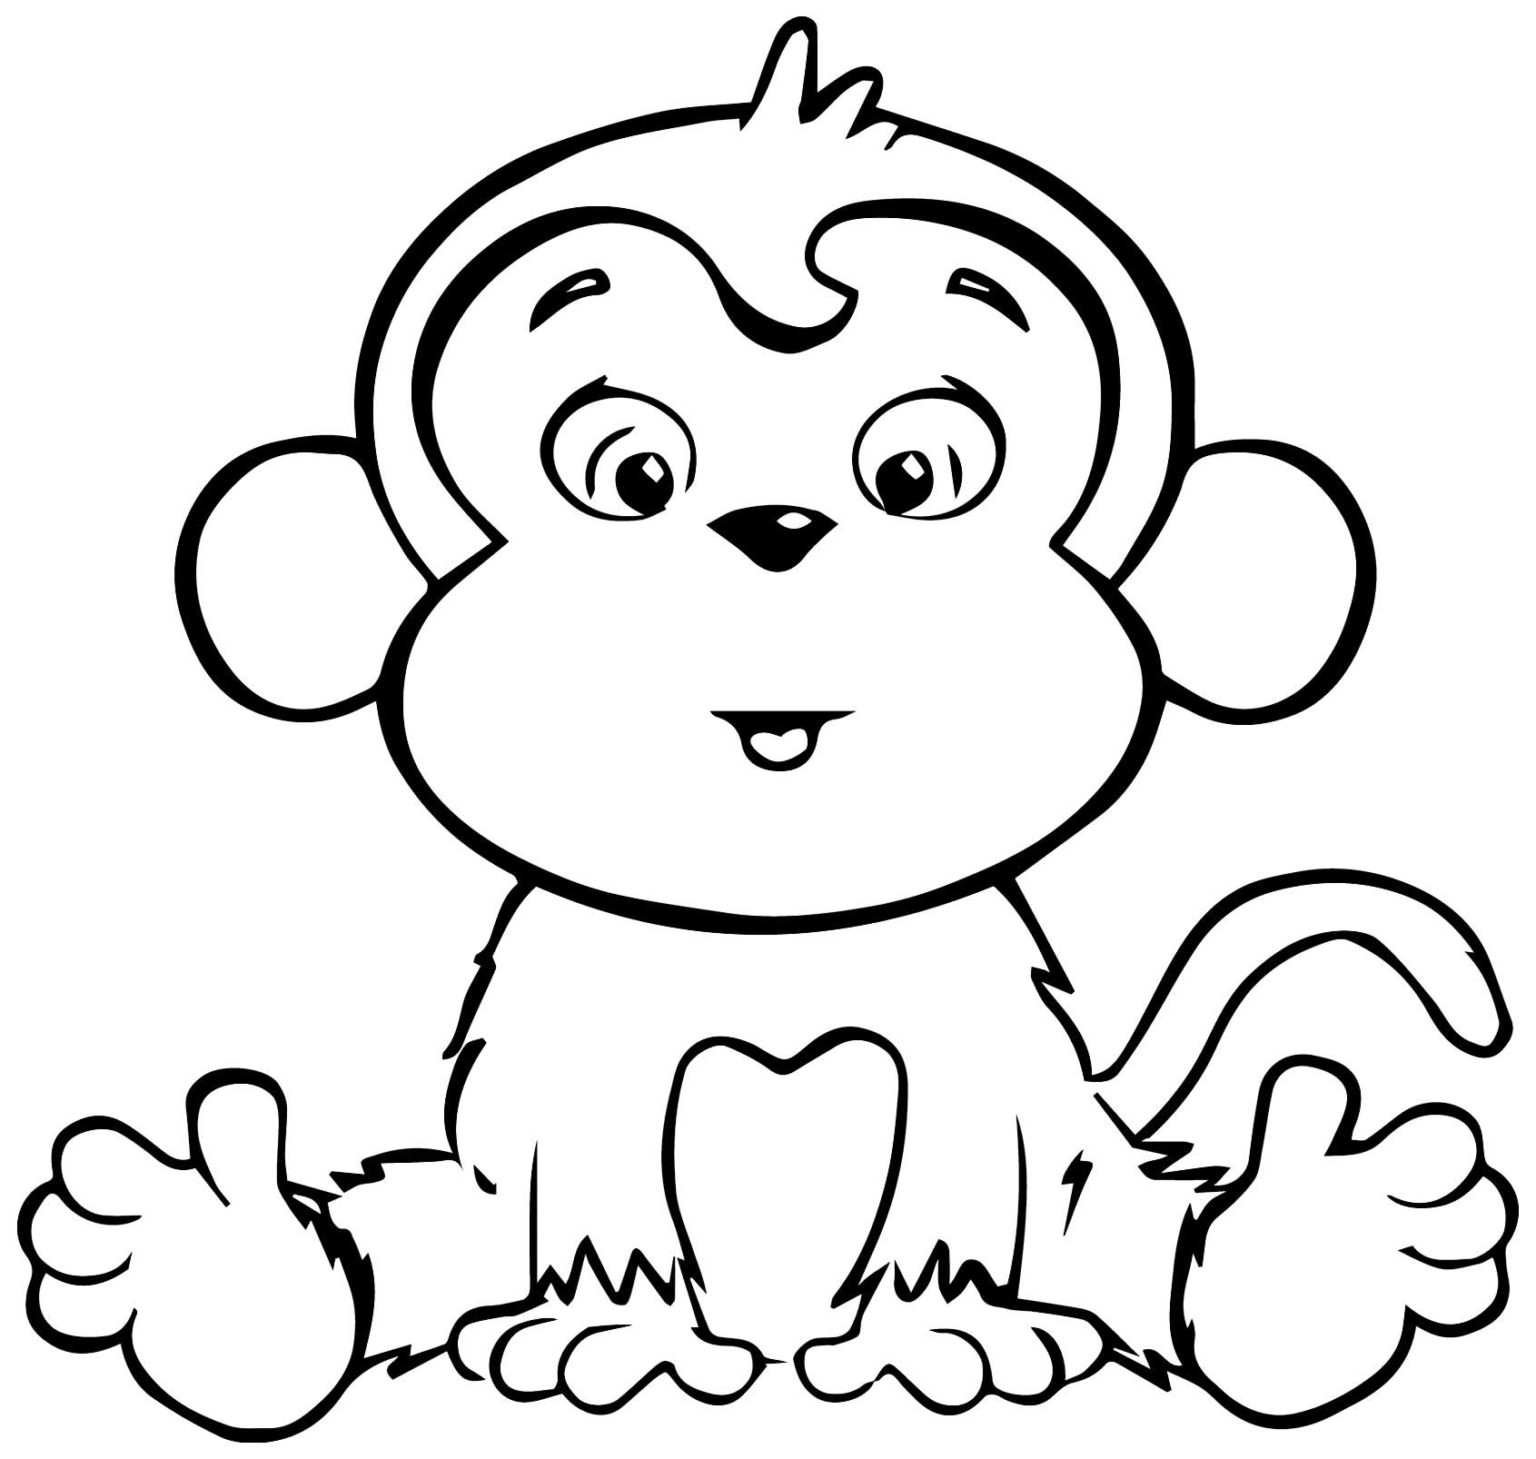 Hình vẽ con khỉ đang ngồi chưa tô màu